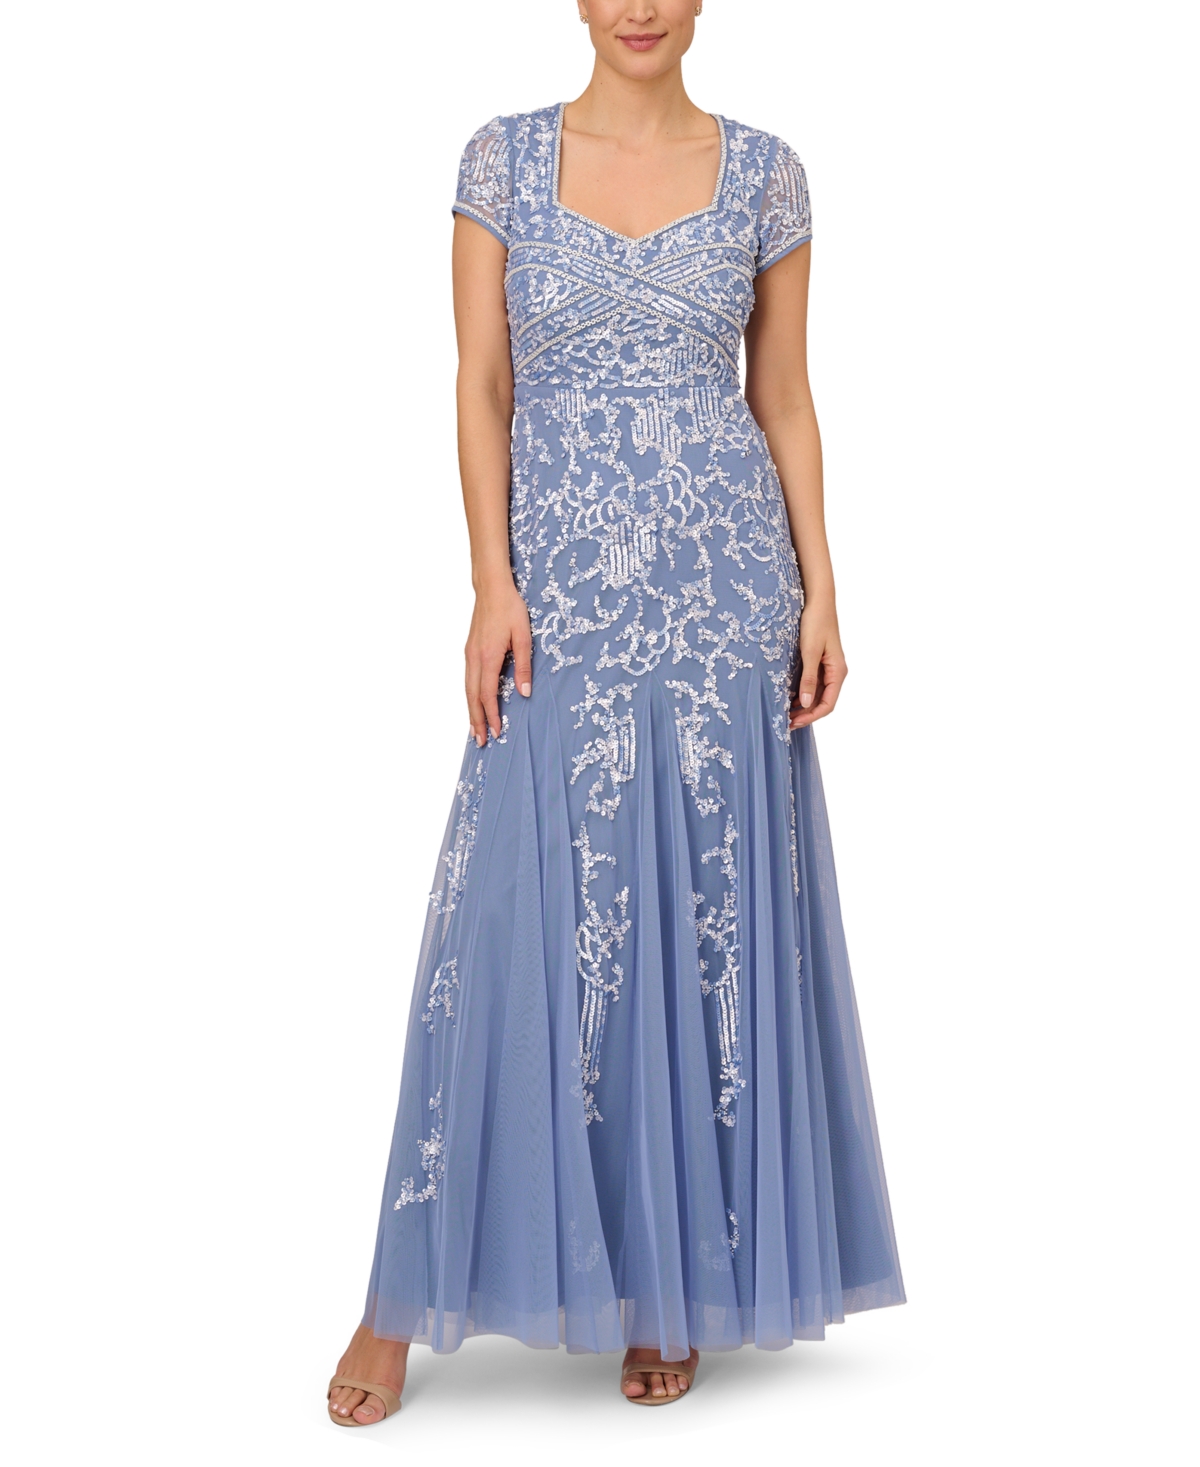 Buy Boardwalk Empire Inspired Dresses Adrianna Papell Embellished Godet Gown - French Blue $349.00 AT vintagedancer.com